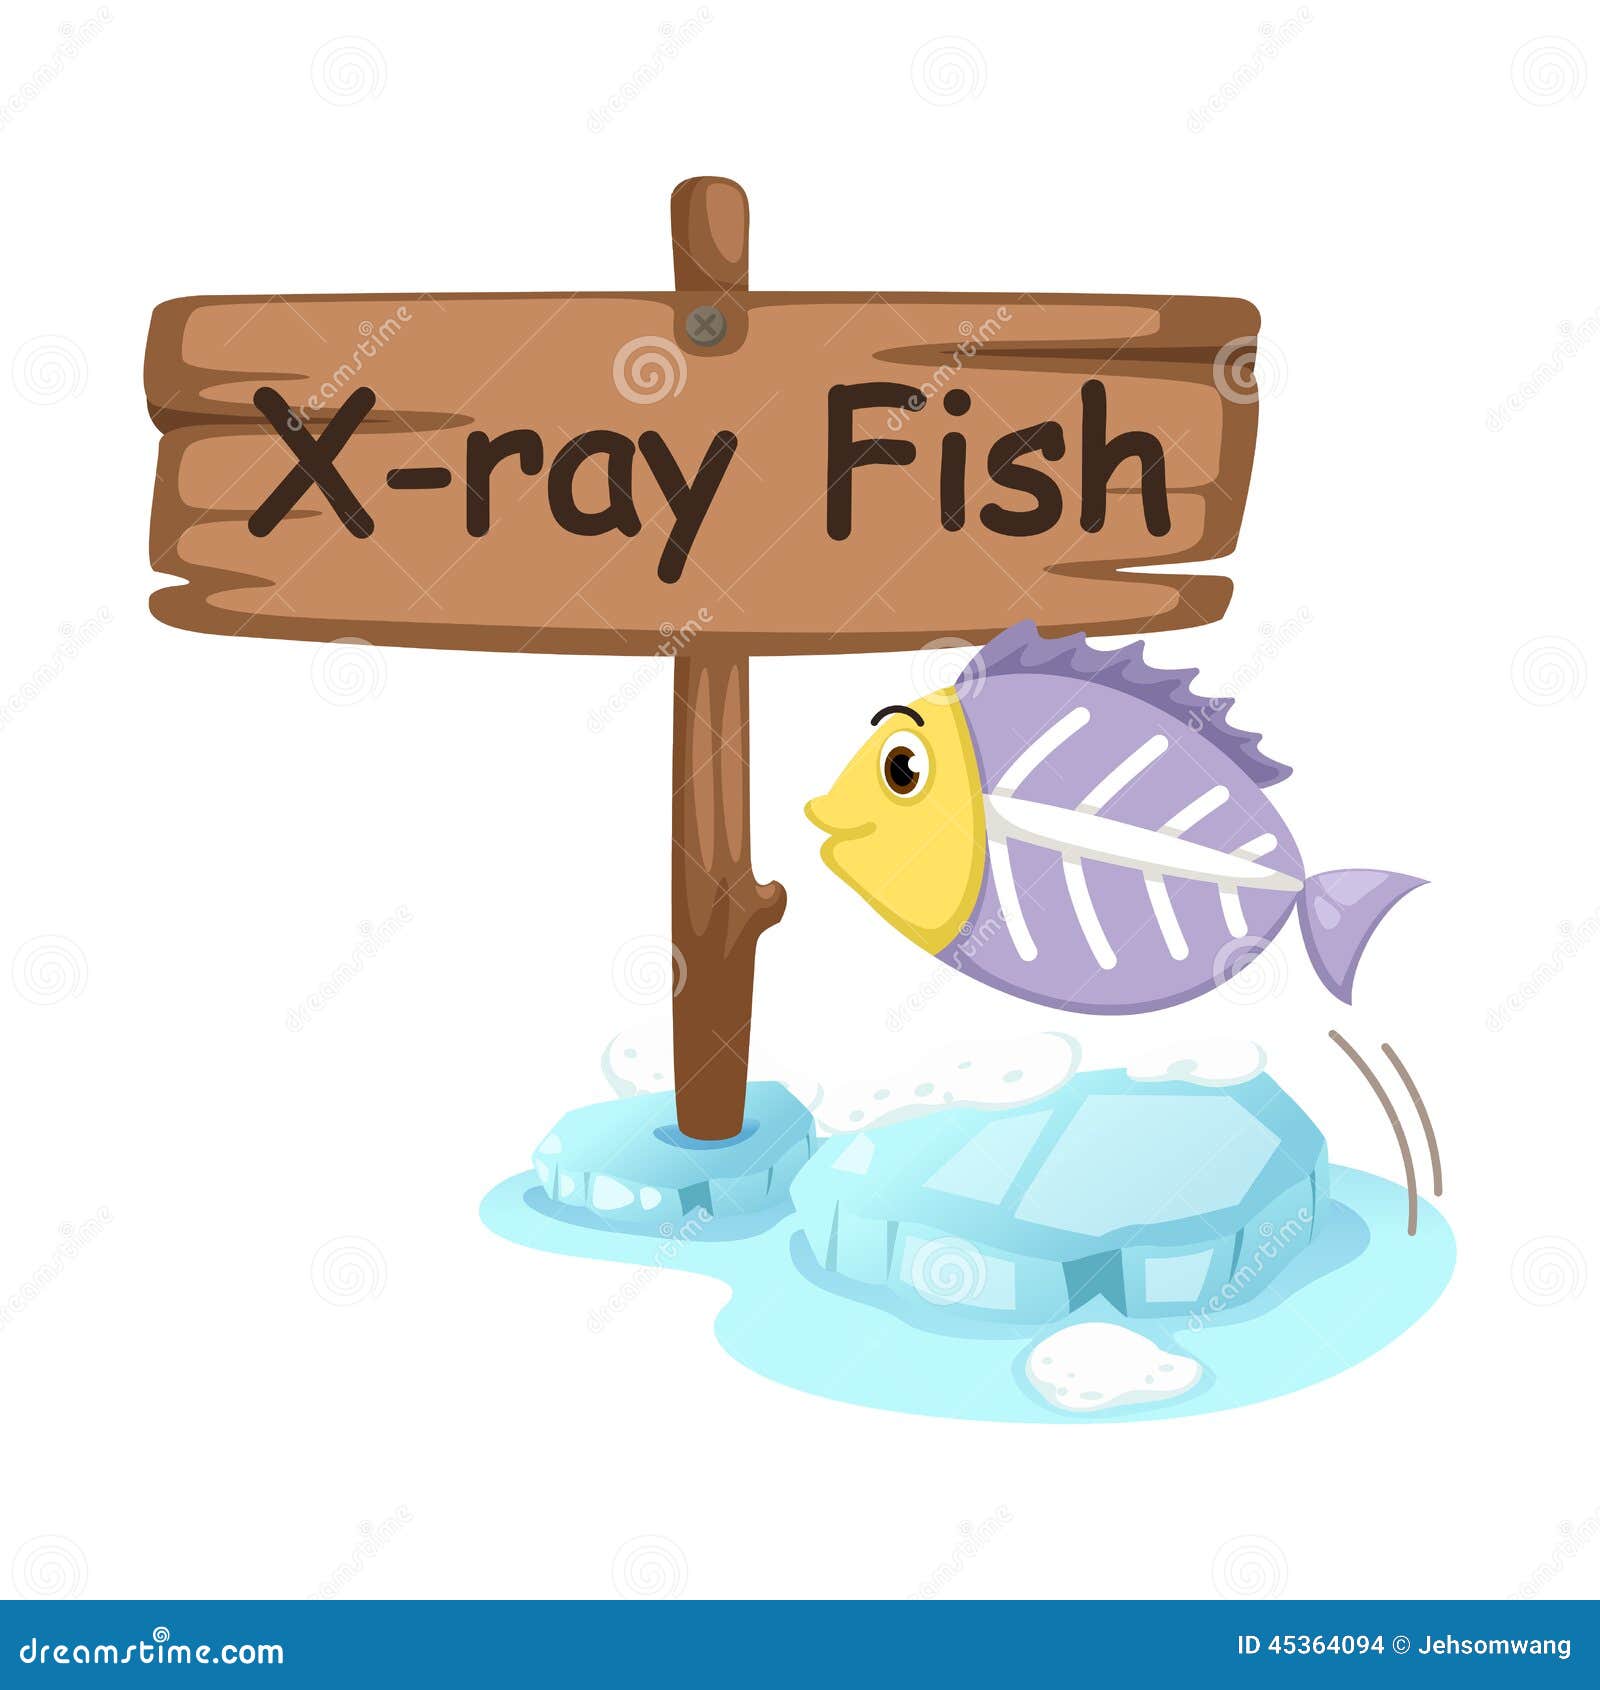 x ray fish clipart - photo #26